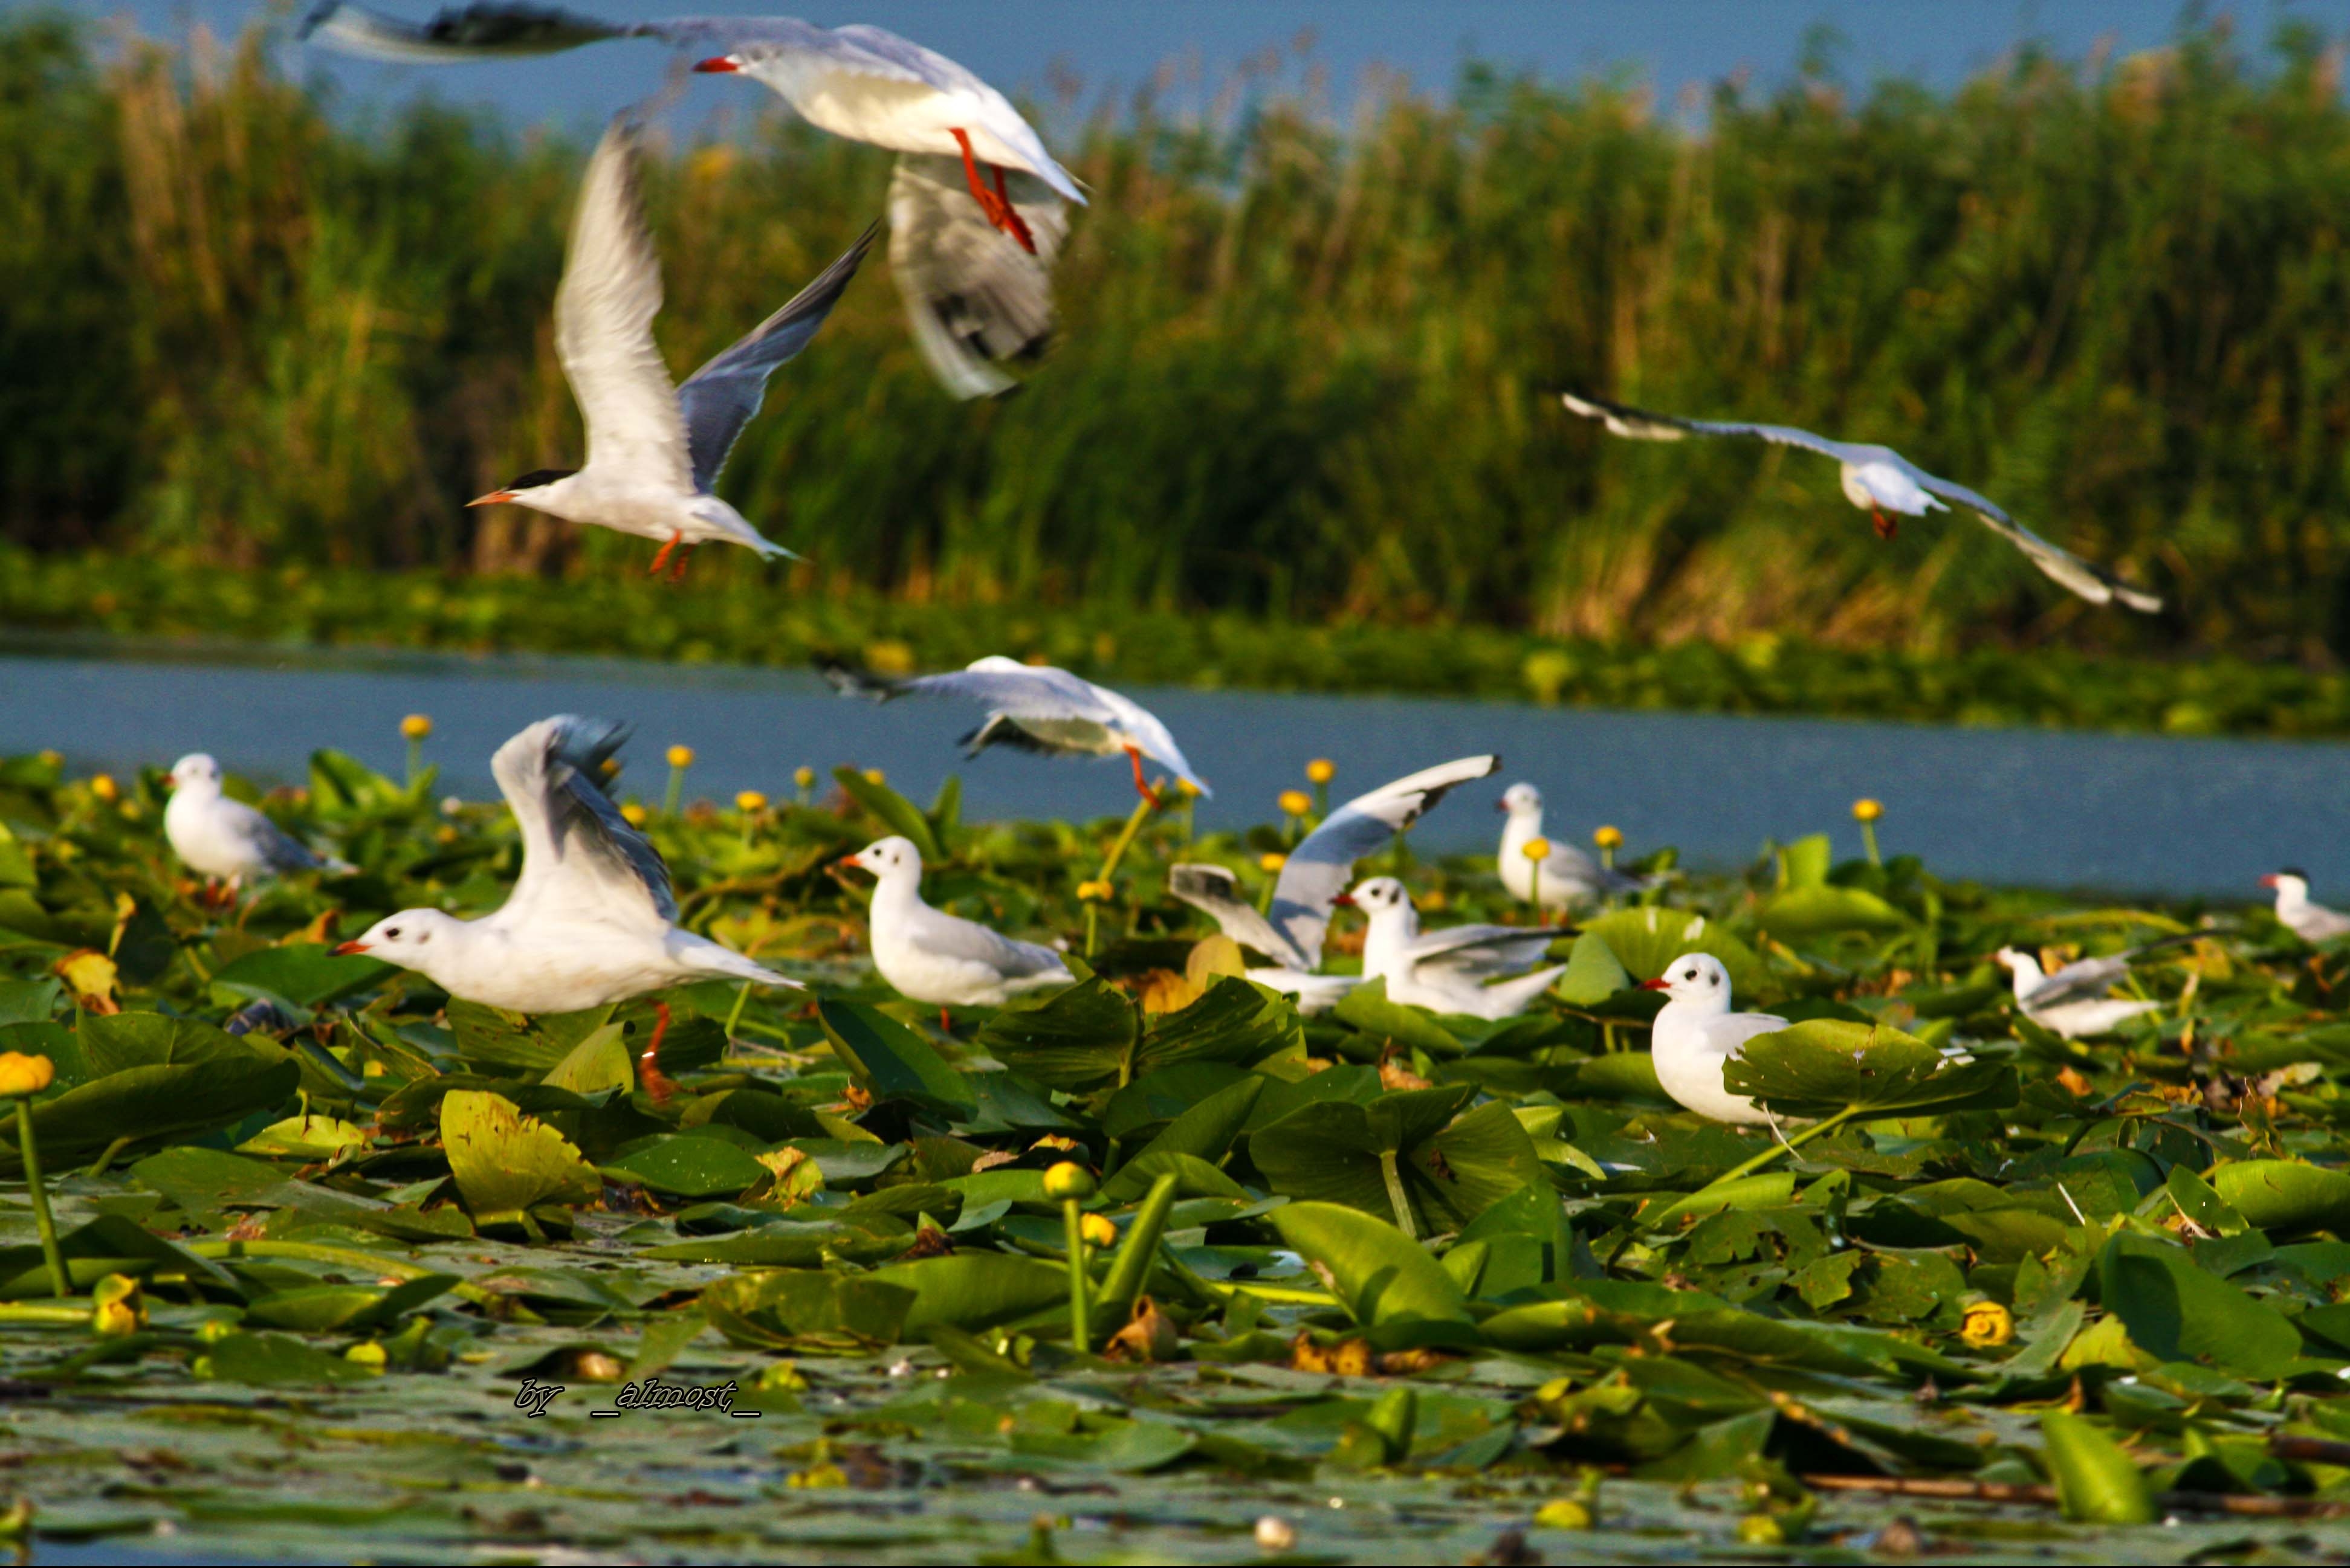 Delta Dunării valoare inestimabilă pentru patrimoniul natural universal